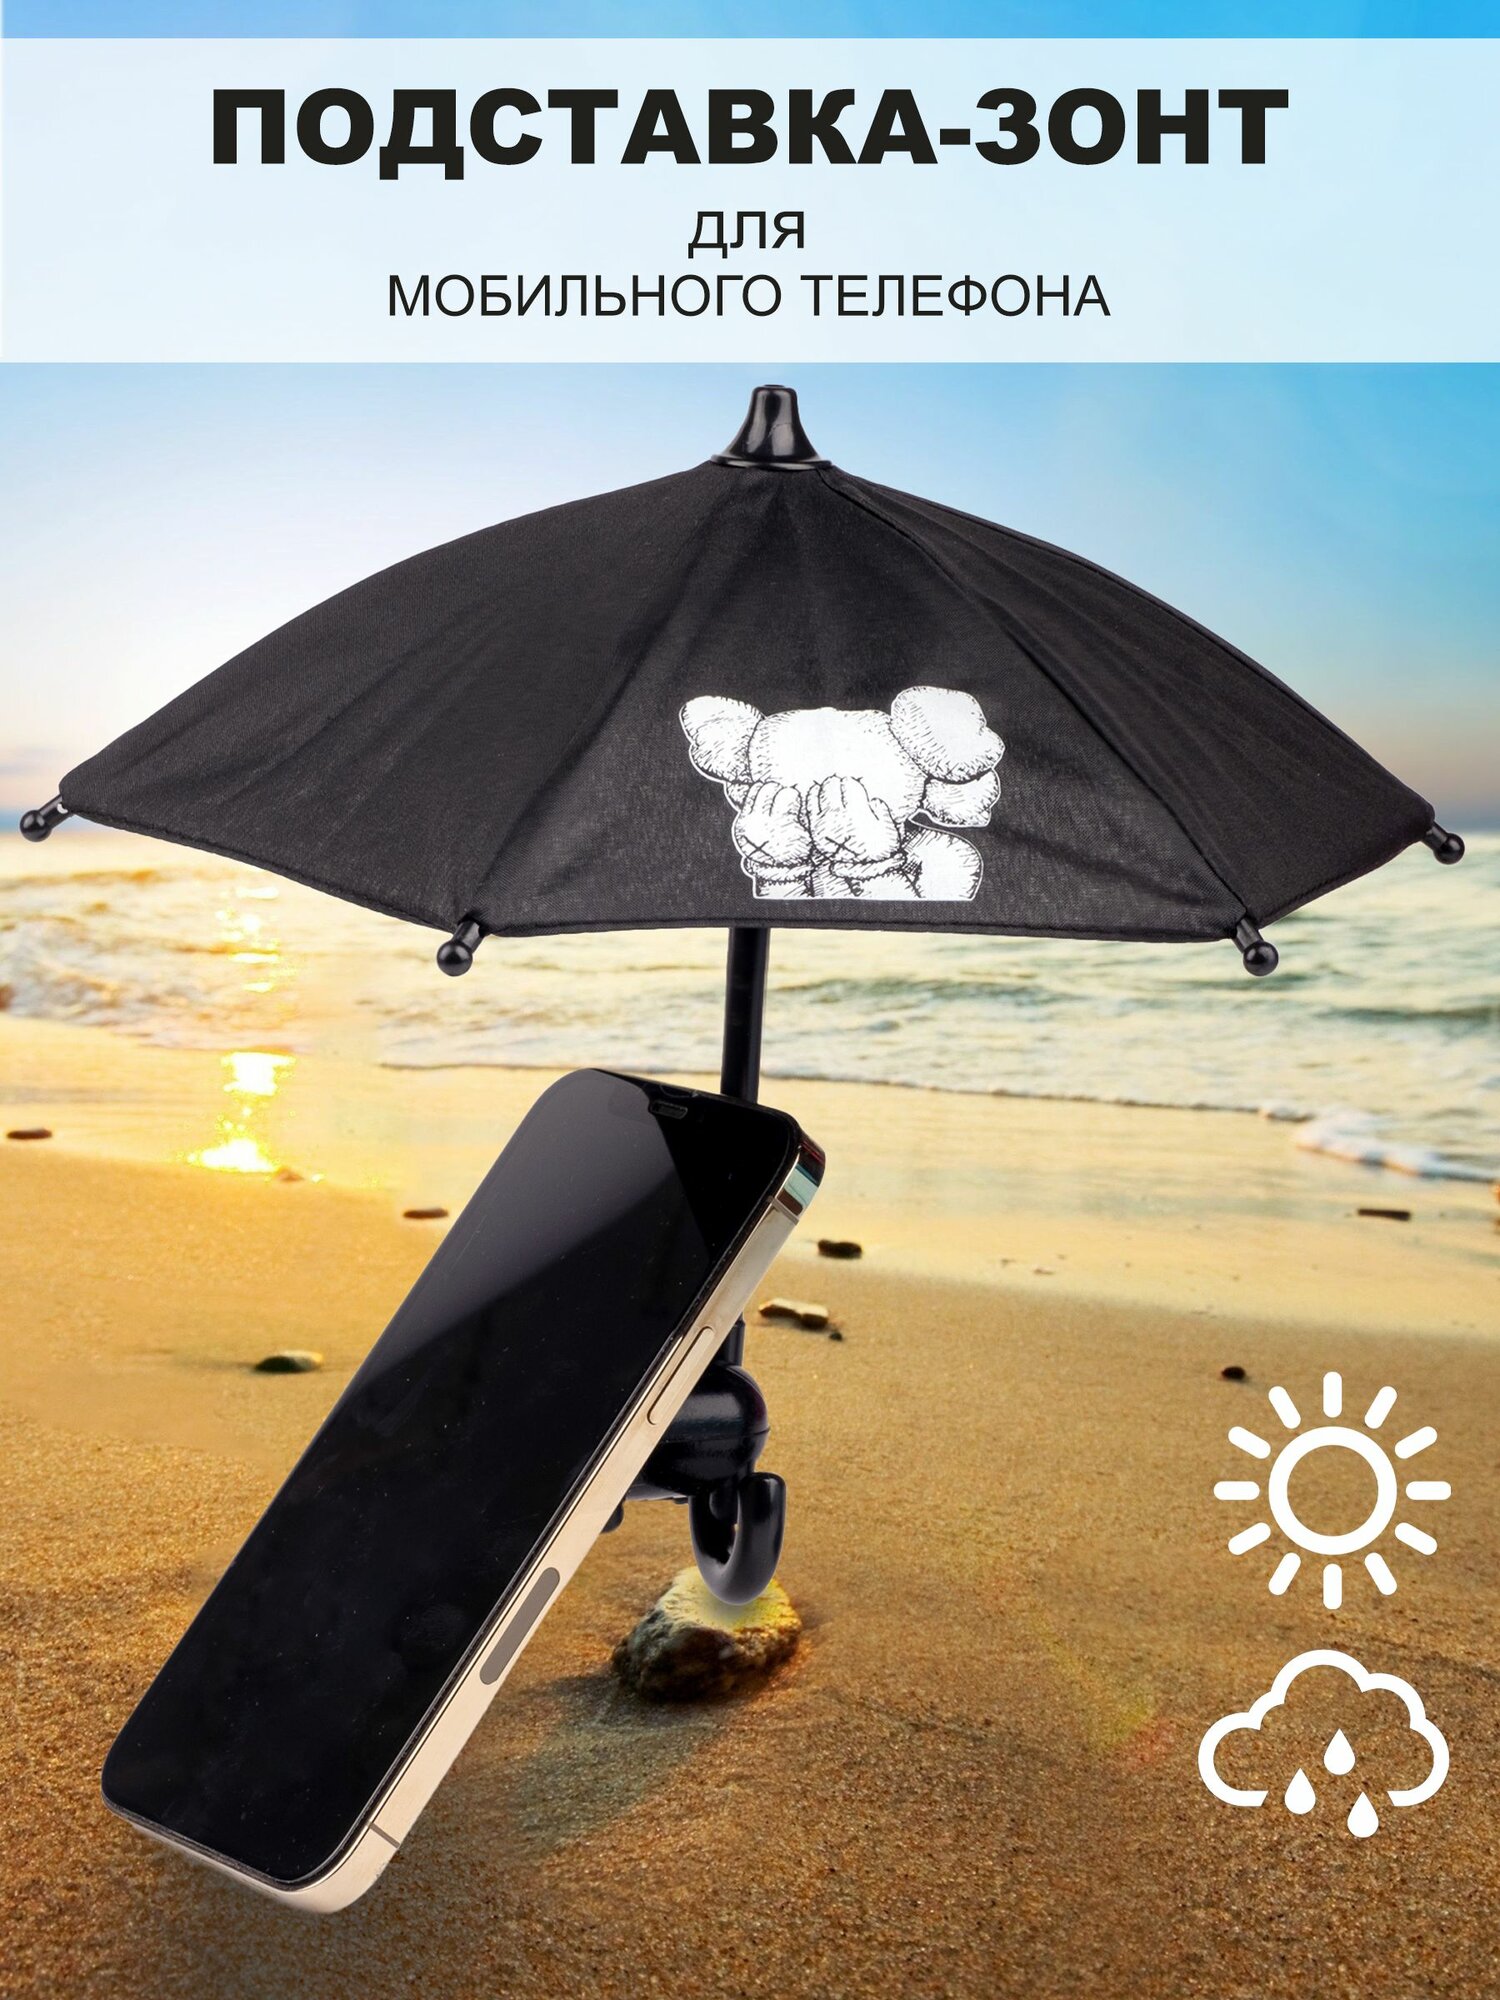 Зонтик подставка для смартфона